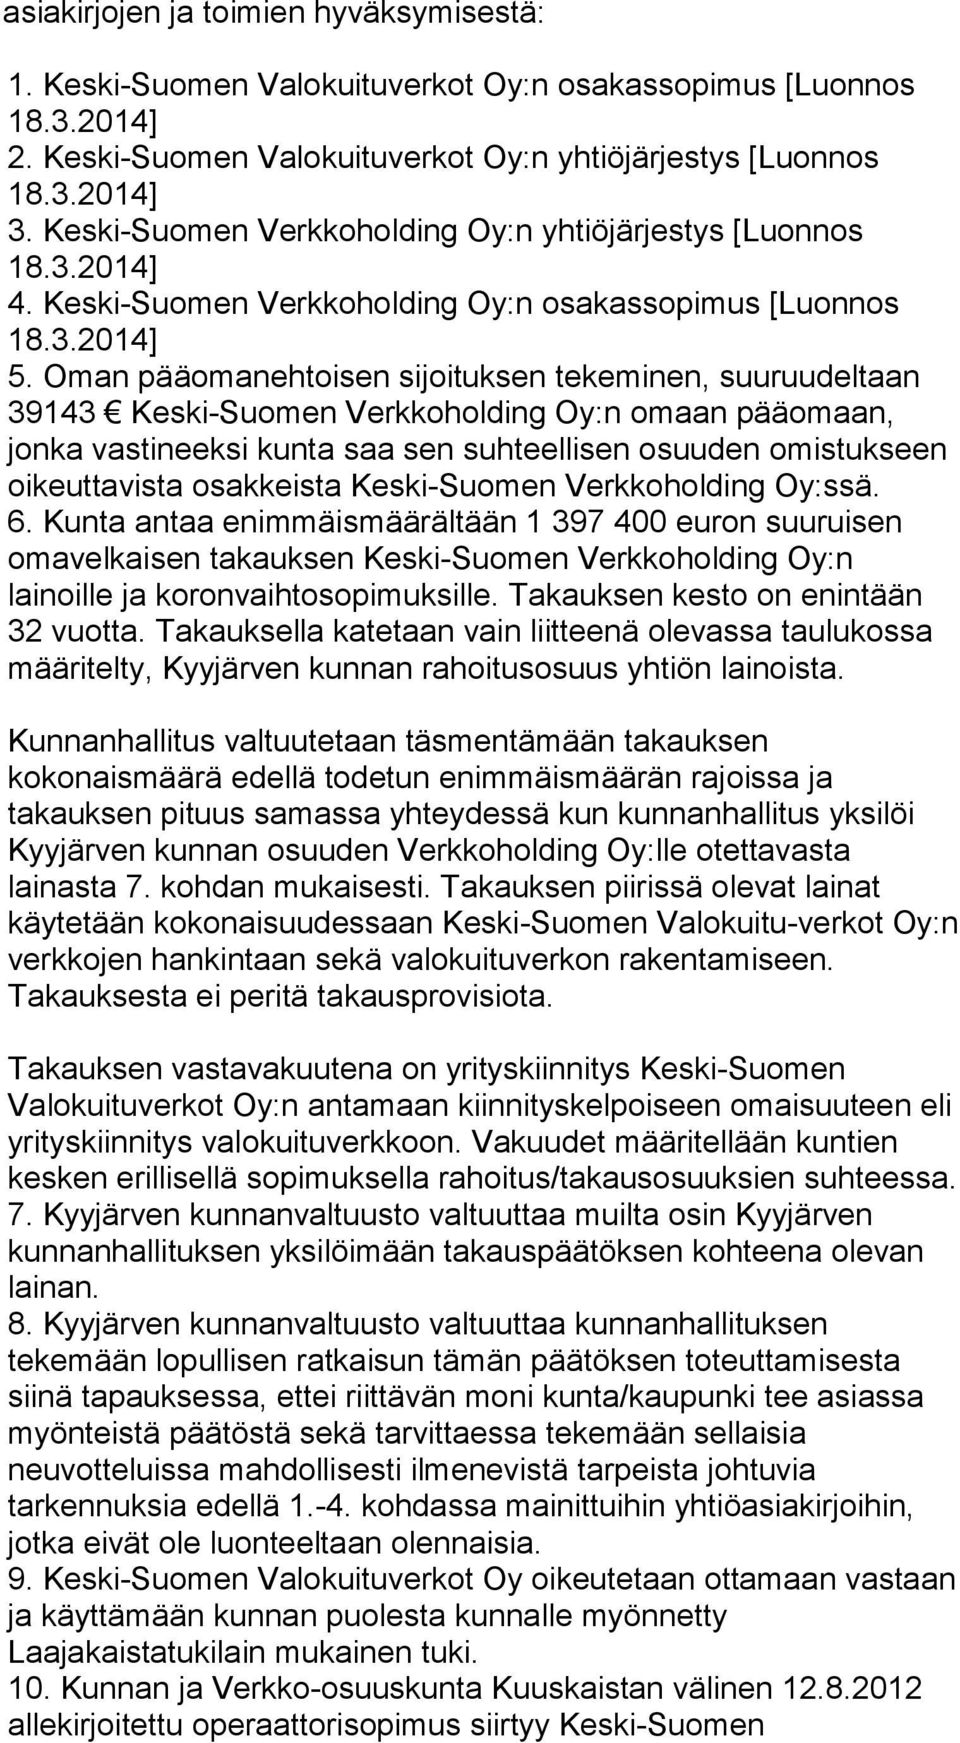 Oman pääomanehtoisen sijoituksen tekeminen, suuruudeltaan 39143 Keski-Suomen Verkkoholding Oy:n omaan pääomaan, jonka vastineeksi kunta saa sen suhteellisen osuuden omistukseen oikeuttavista